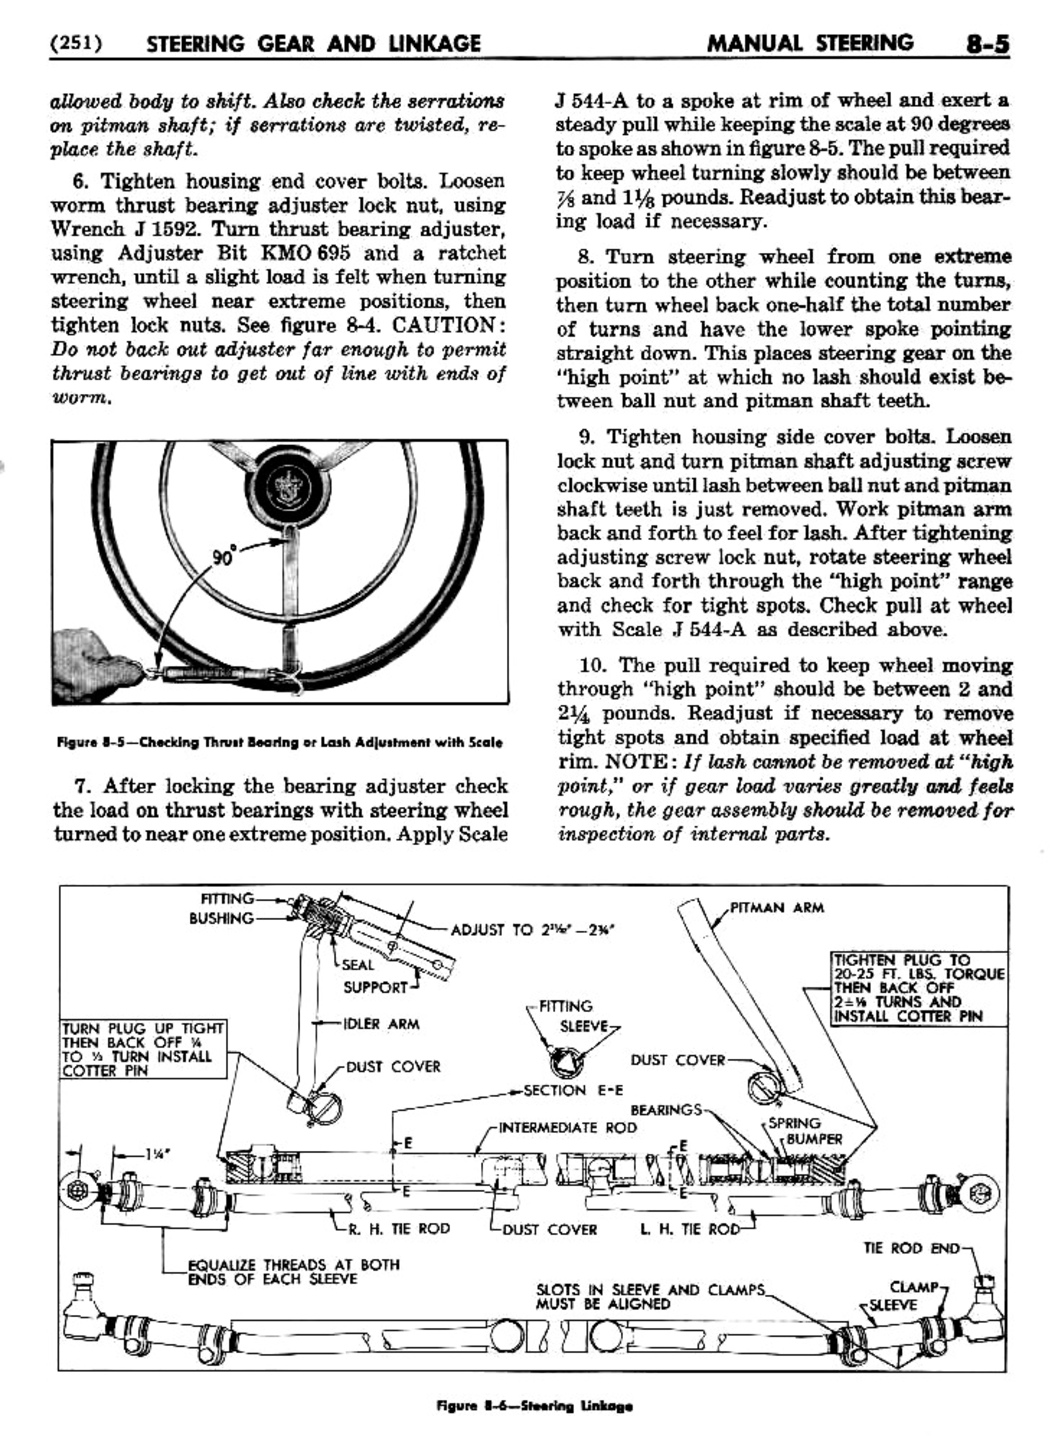 n_09 1955 Buick Shop Manual - Steering-005-005.jpg